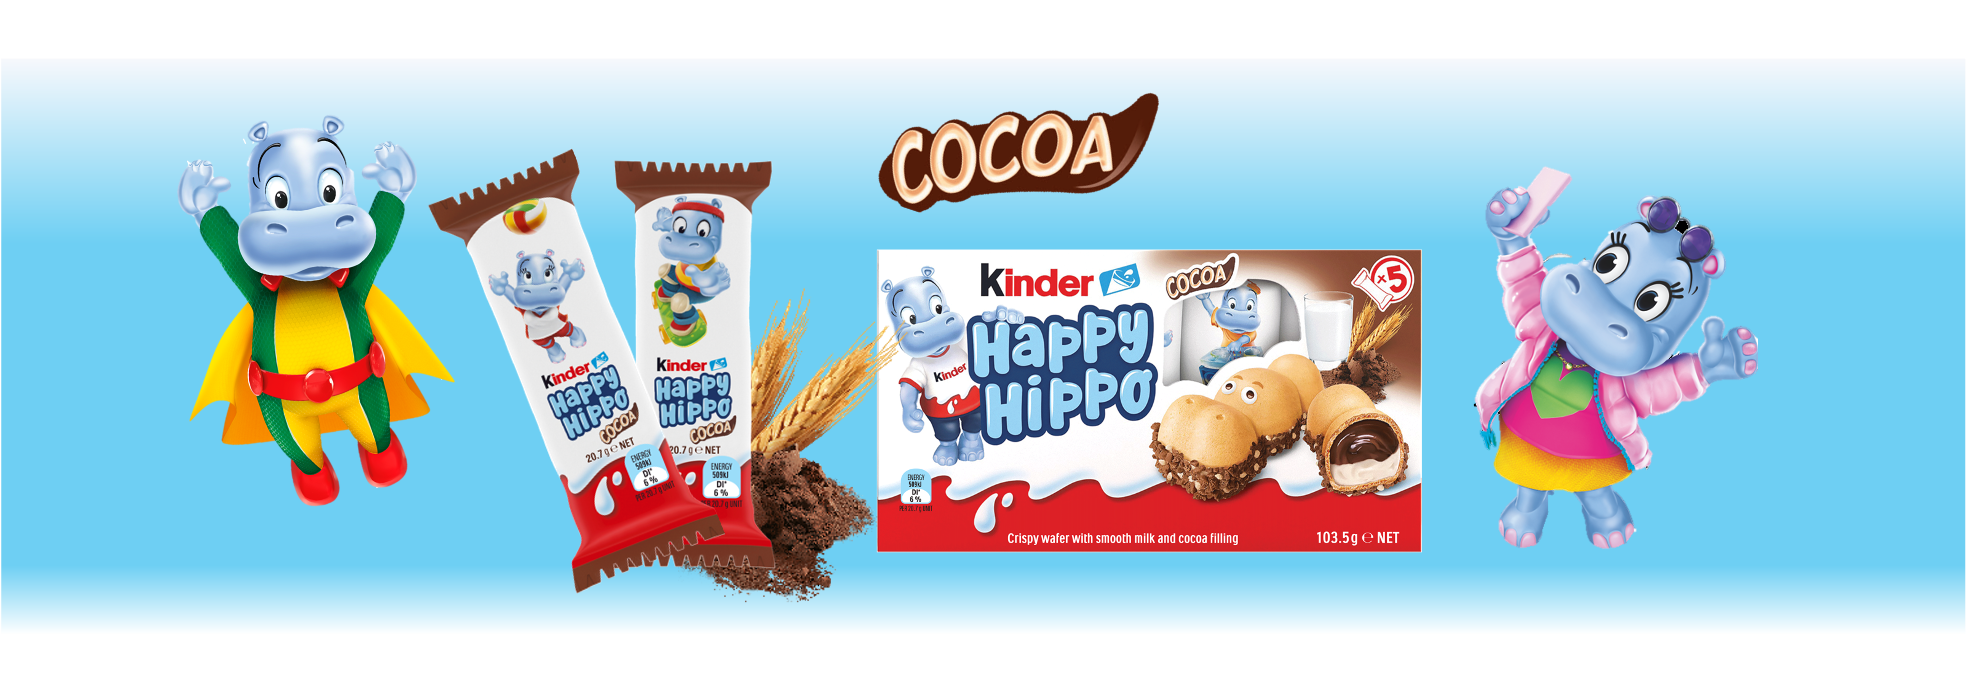 happy-hippo-cocoa-header